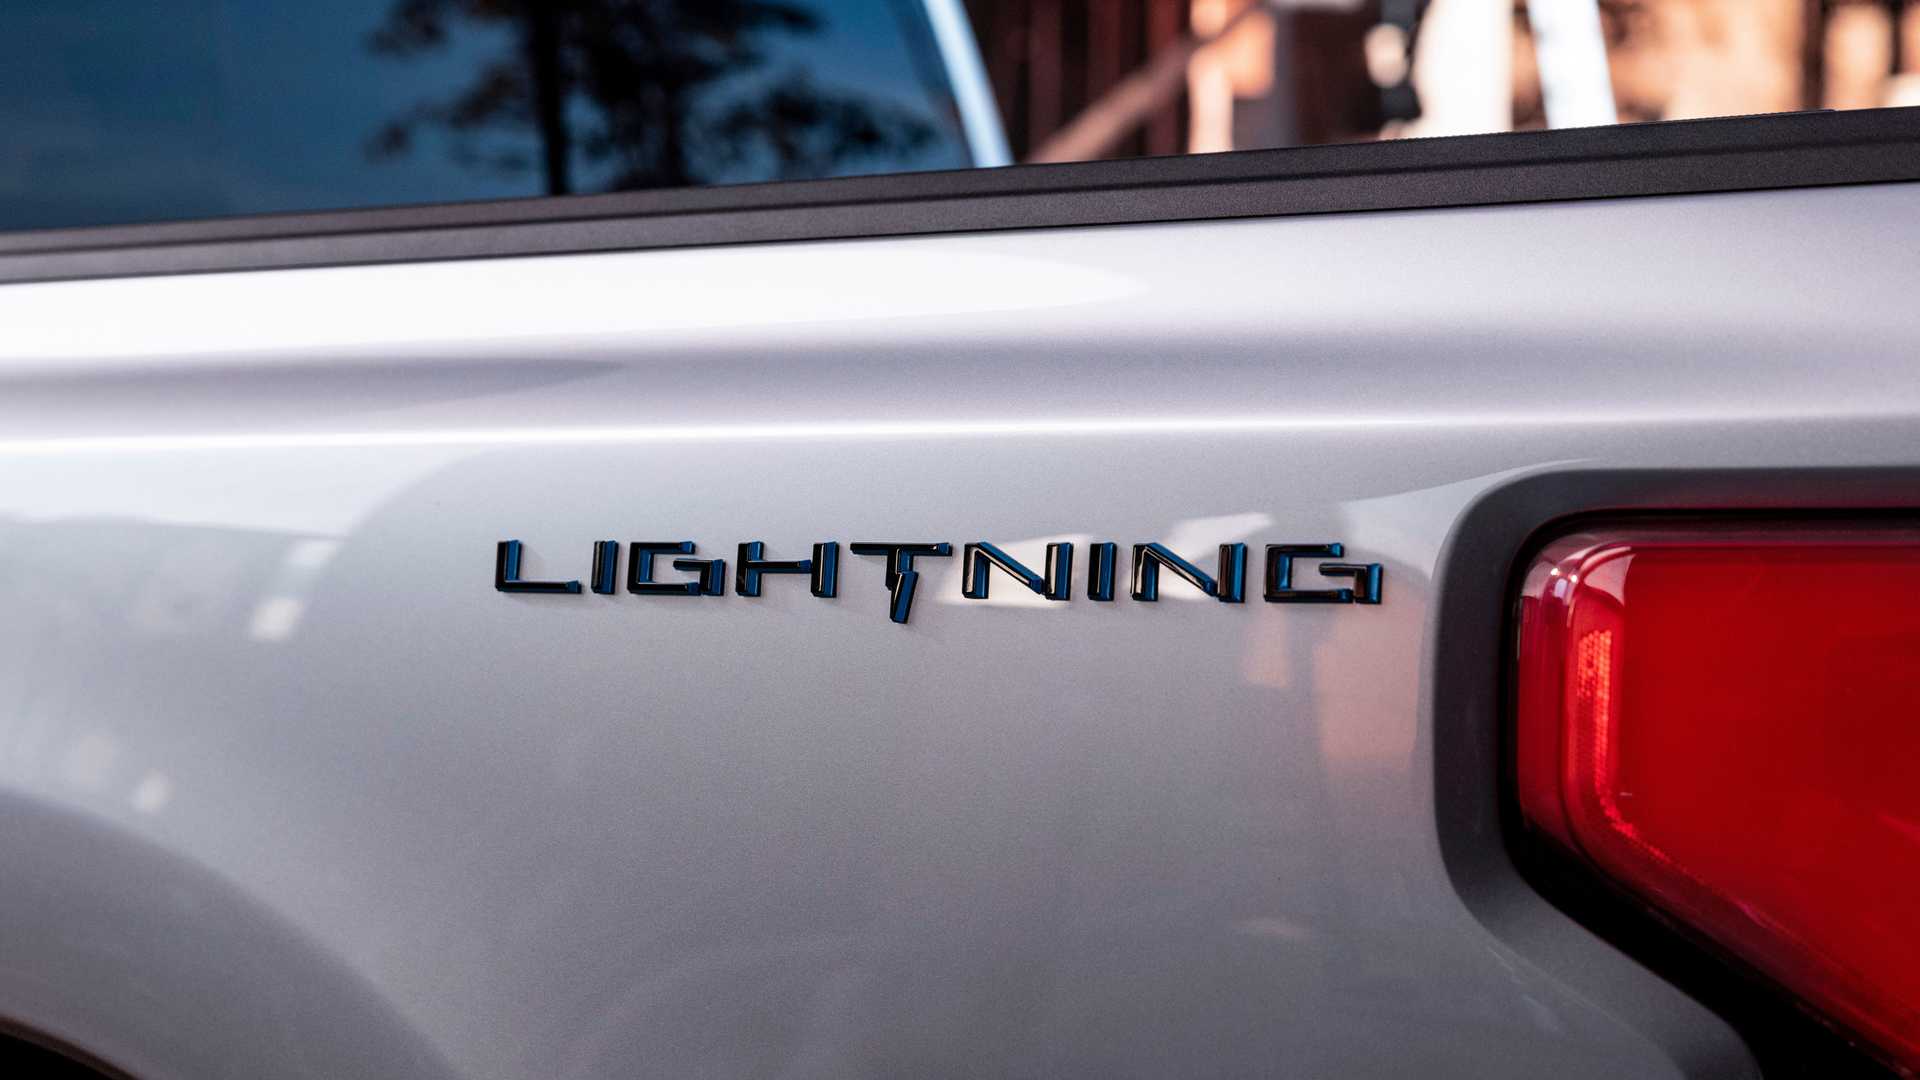 F-150 Lightning, el nombre oficial de la primera pick-up eléctrica de Ford